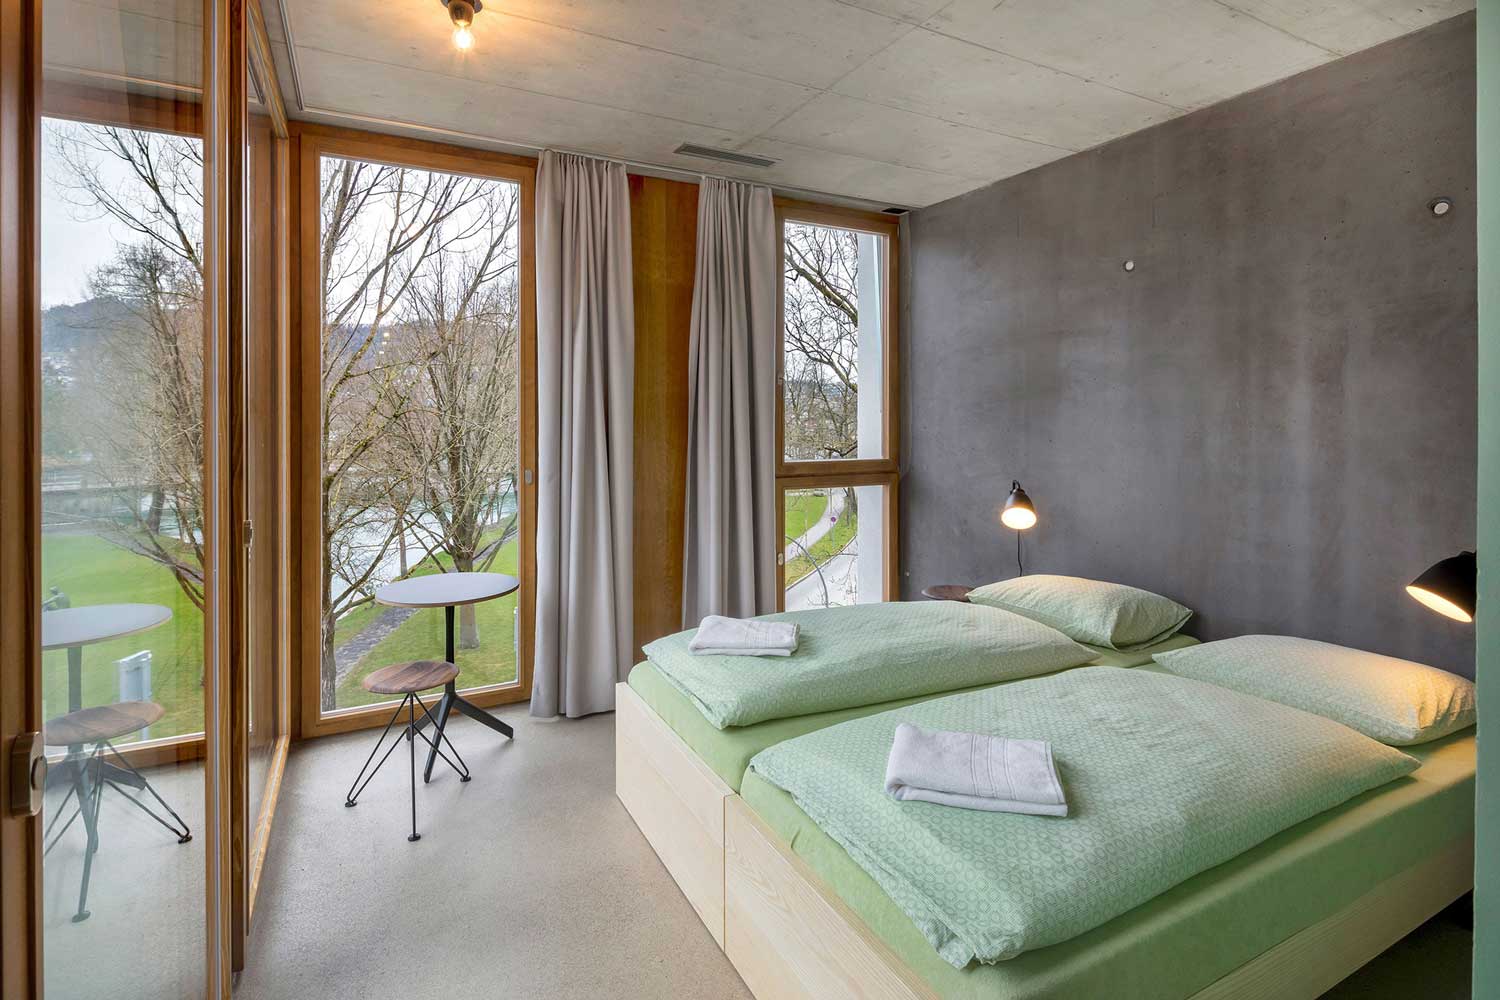 Ein Doppelbett in der Jugendherberge Bern mit Aussicht auf die Aare.